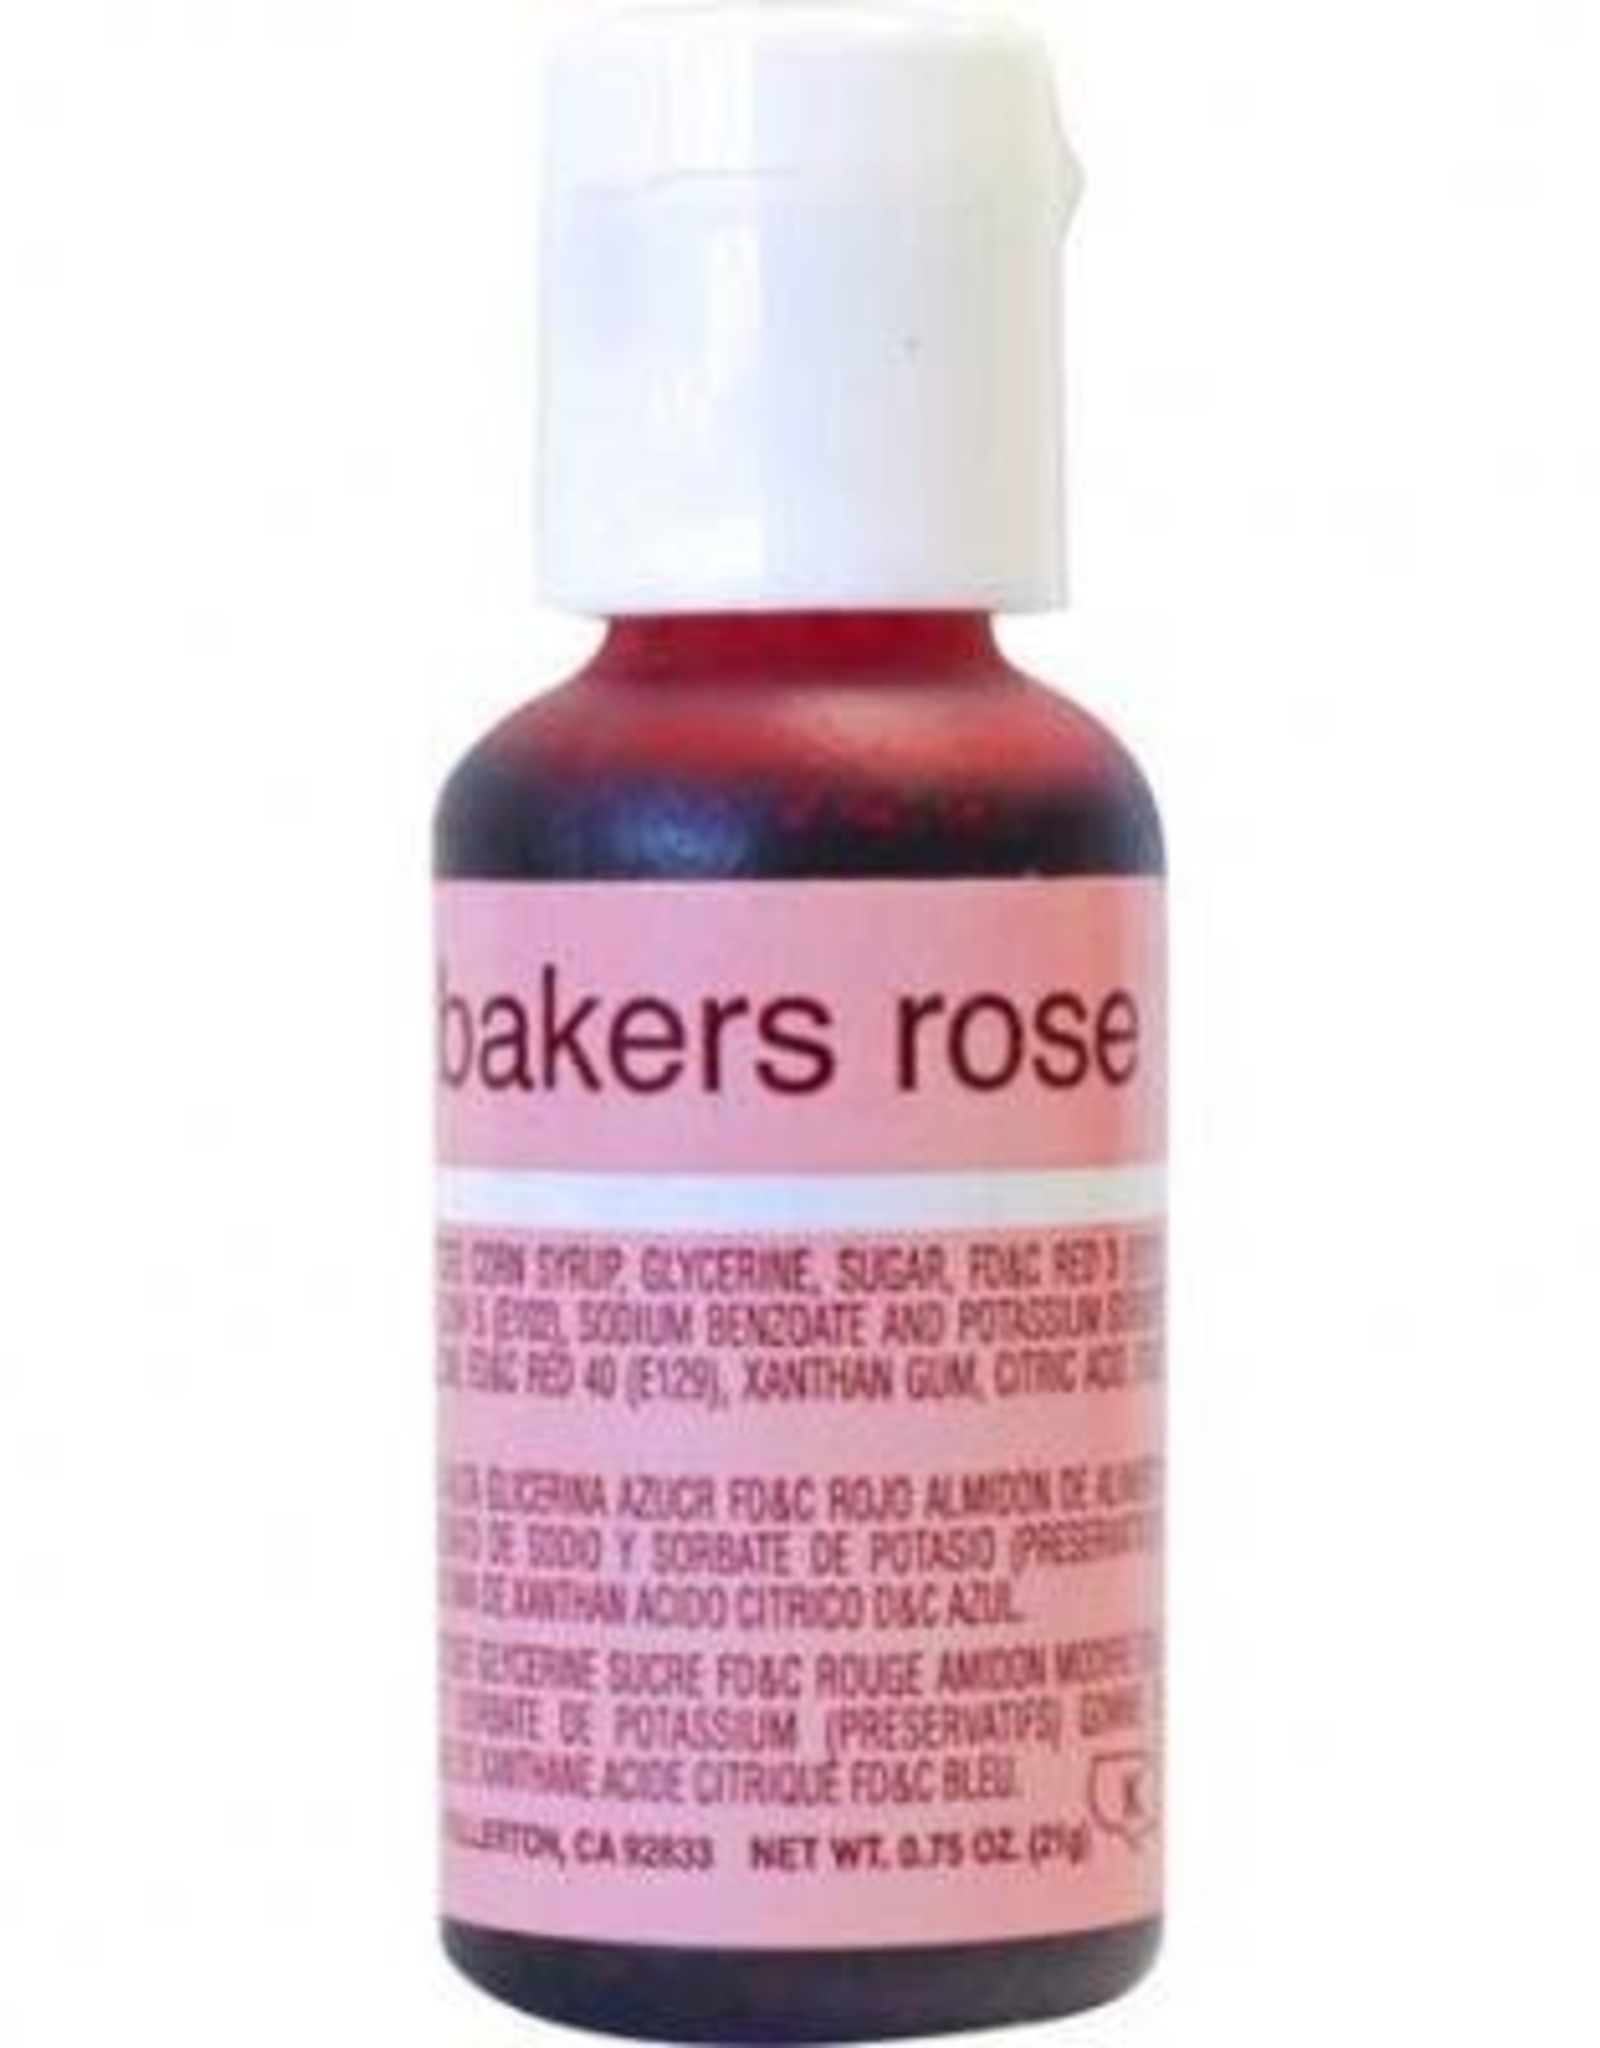 Baker's Rose Chefmaster Liqua-gel 3/4 ounce